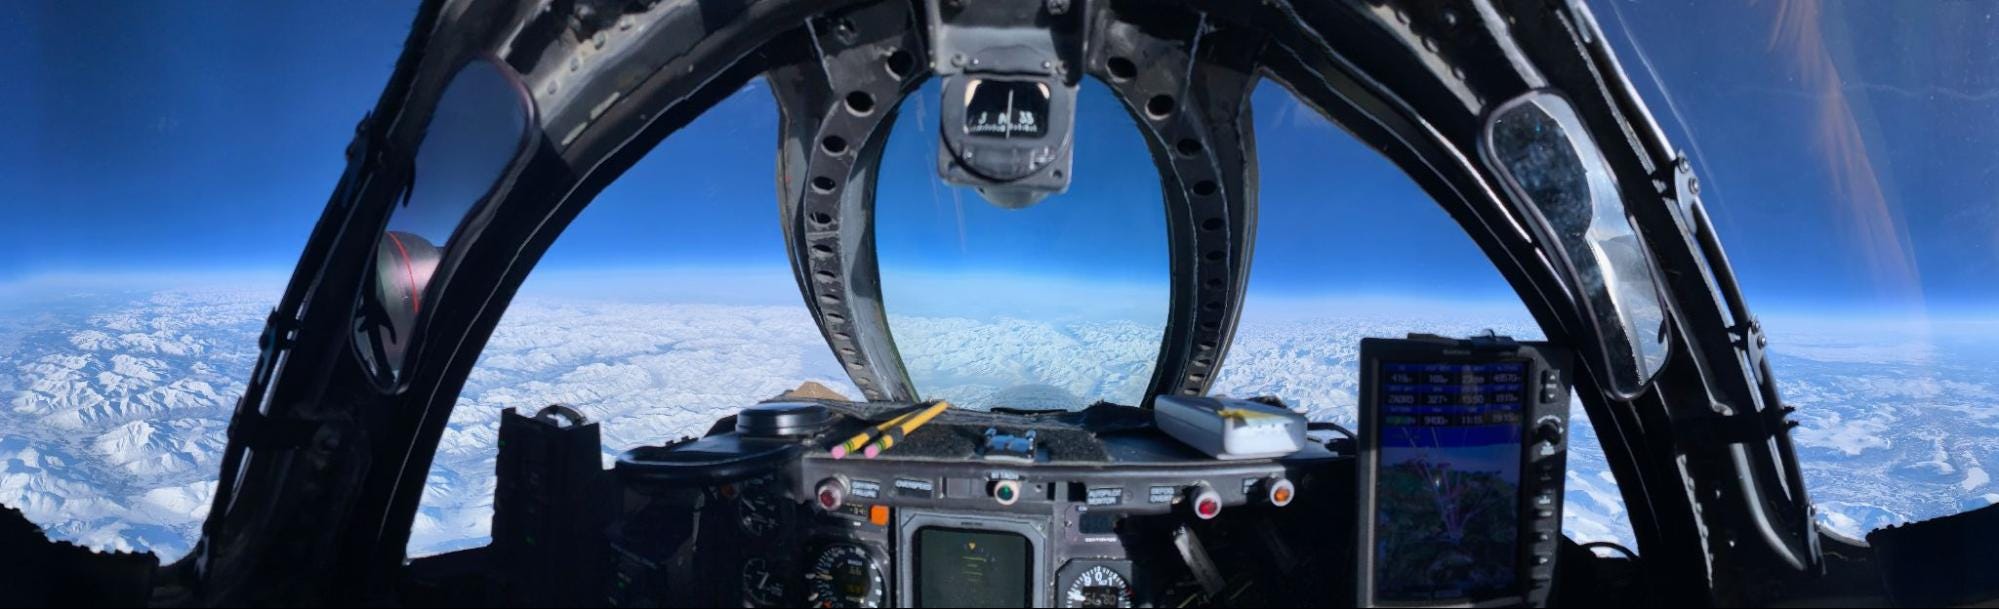 Ein Bild aus dem Inneren eines Cockpits zeigt den Himmel und die Wolken darunter